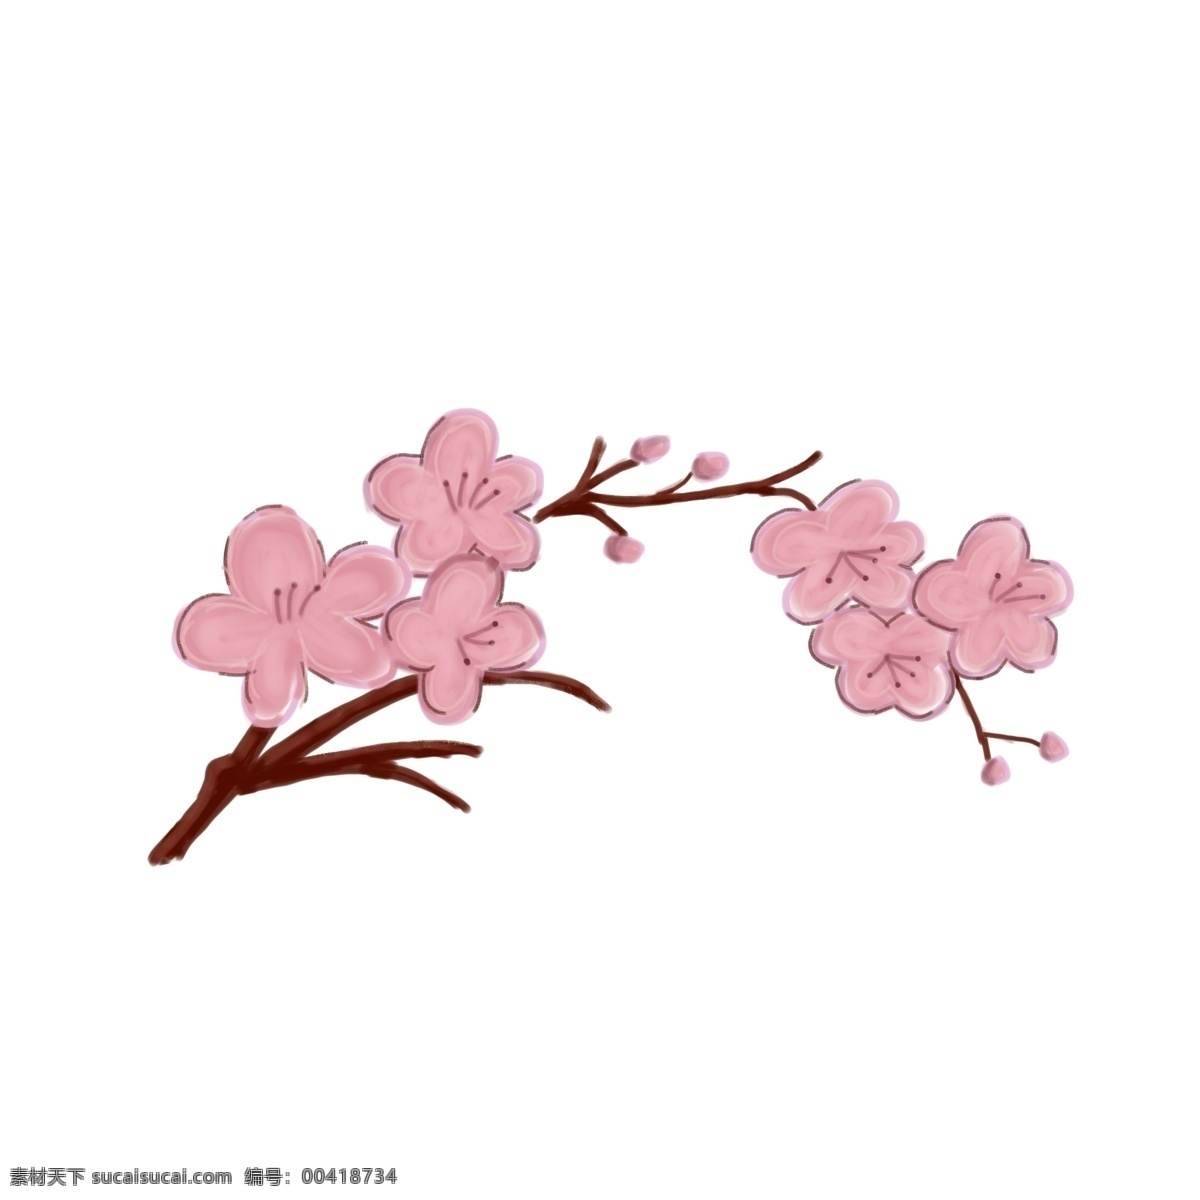 手绘 卡通 粉色 梅花 少女 花朵 春天 清新 淡雅 免抠 浅色 平面 高清 可爱 迎春